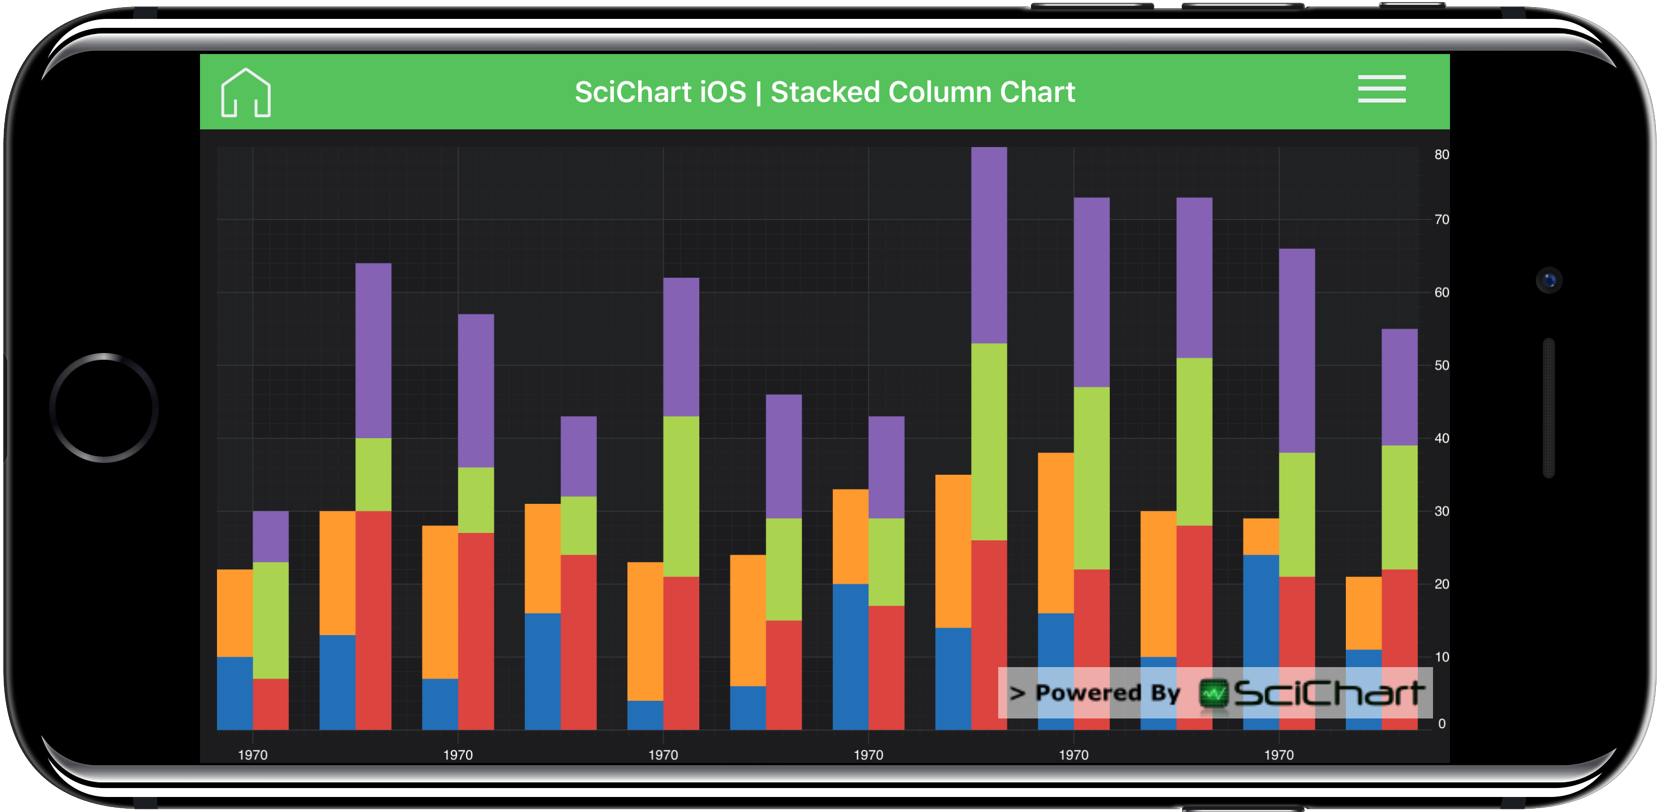 Android Mpchart Stacked Bar Chart